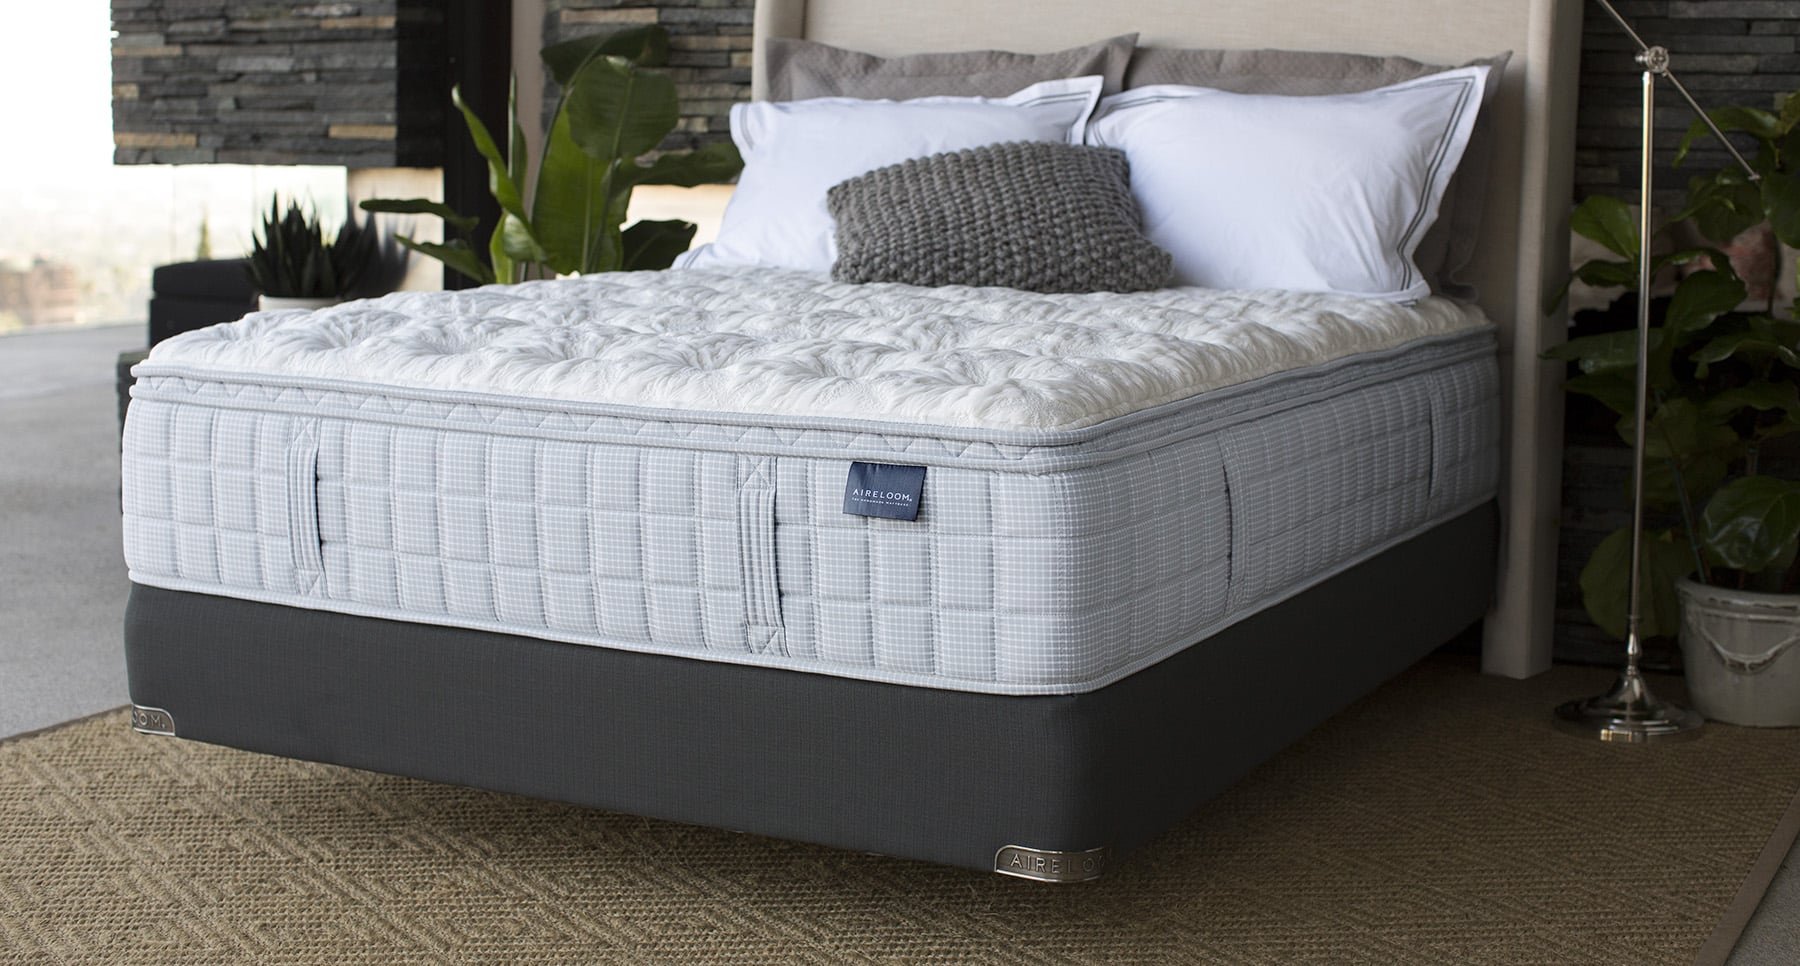 luxipedic bed tech mattress world